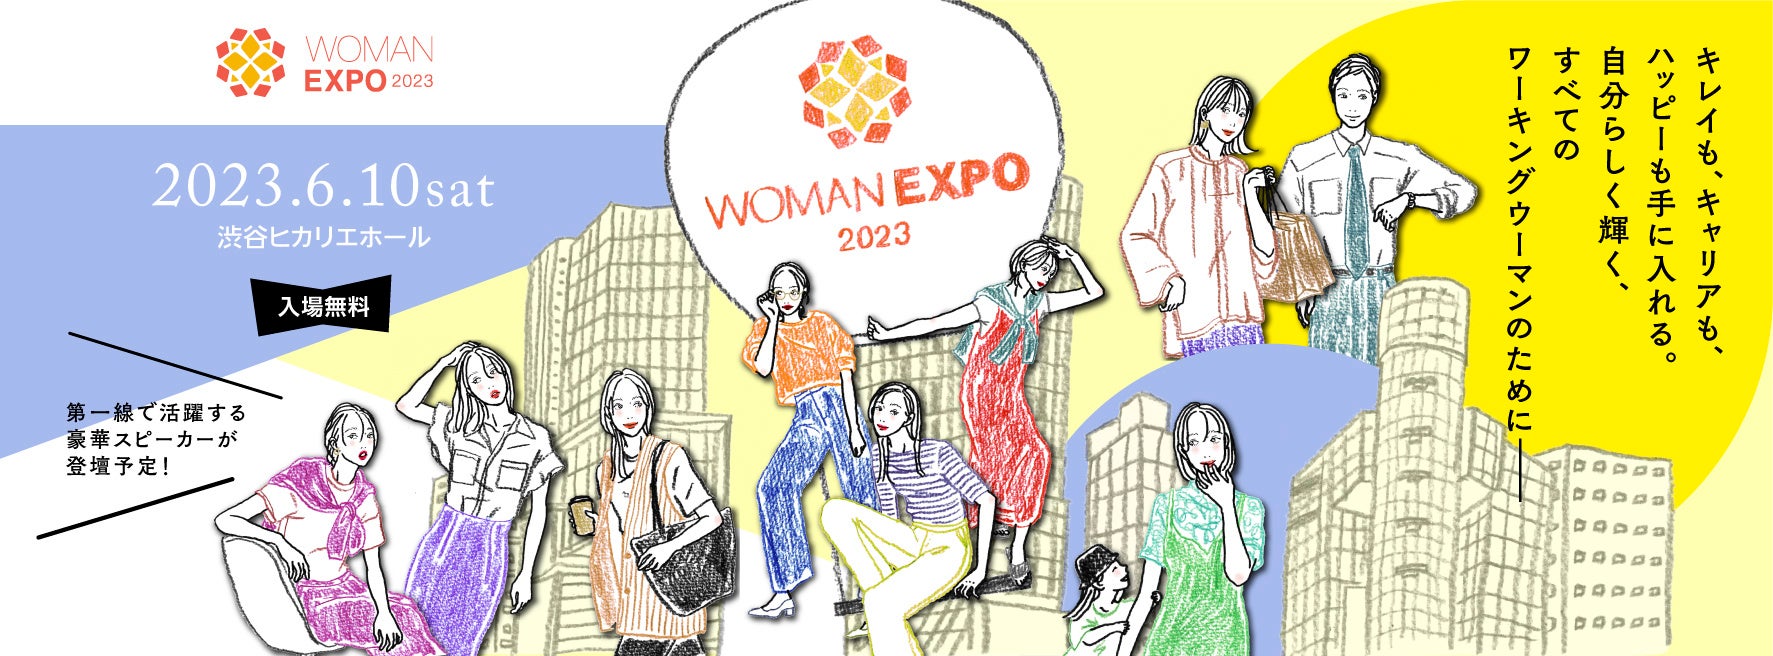 自分らしく輝くすべてのワーキングウーマンのための総合イベント！まもなく開催！ 「WOMAN EXPO 2023」、渋谷ヒカリエにて６月10日（土）、参加の事前申込（無料）を受付中！のサブ画像2